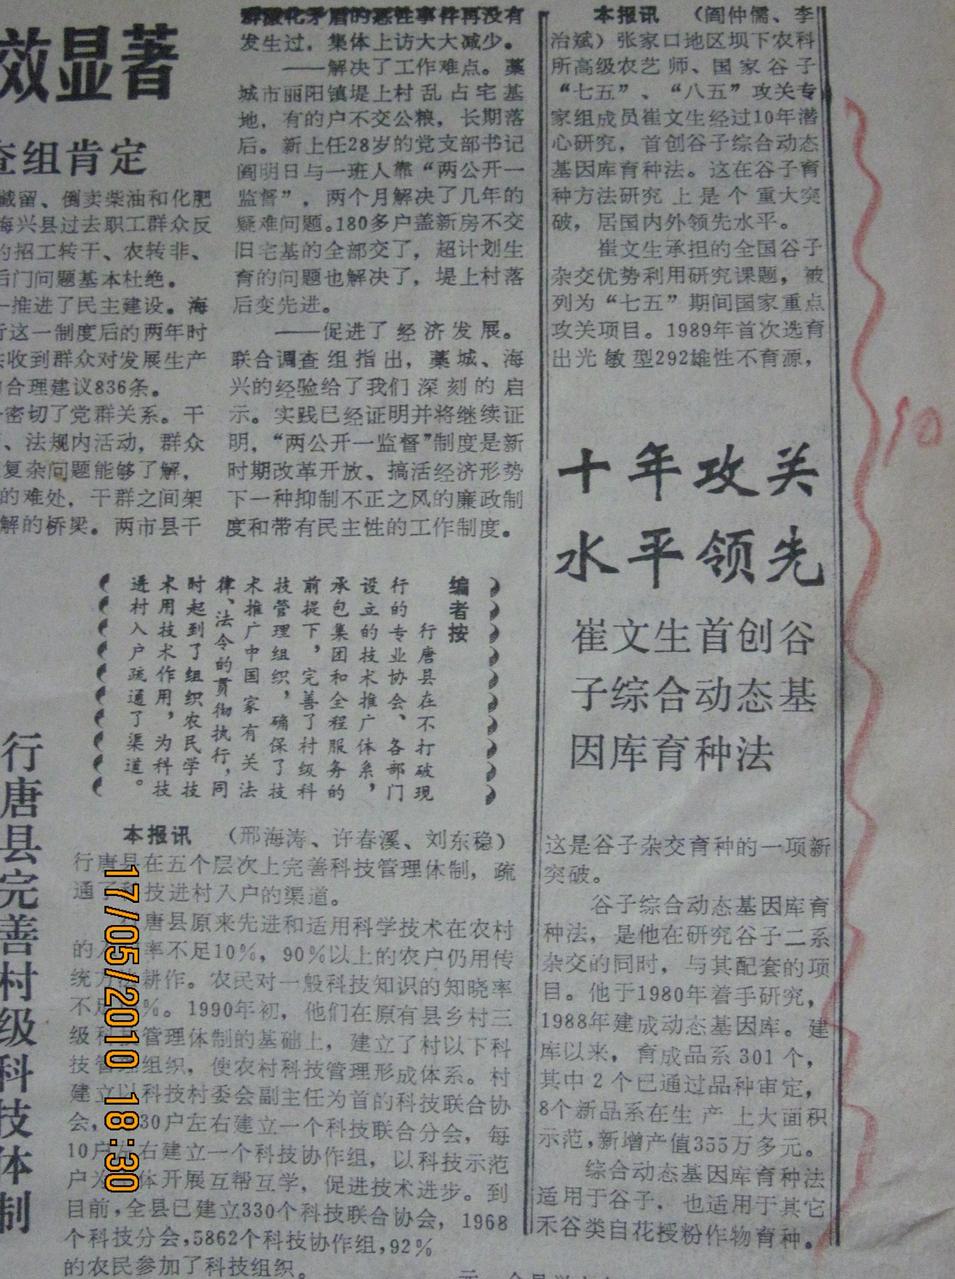 1992年1月6日河北日報報導動態基因庫育種法